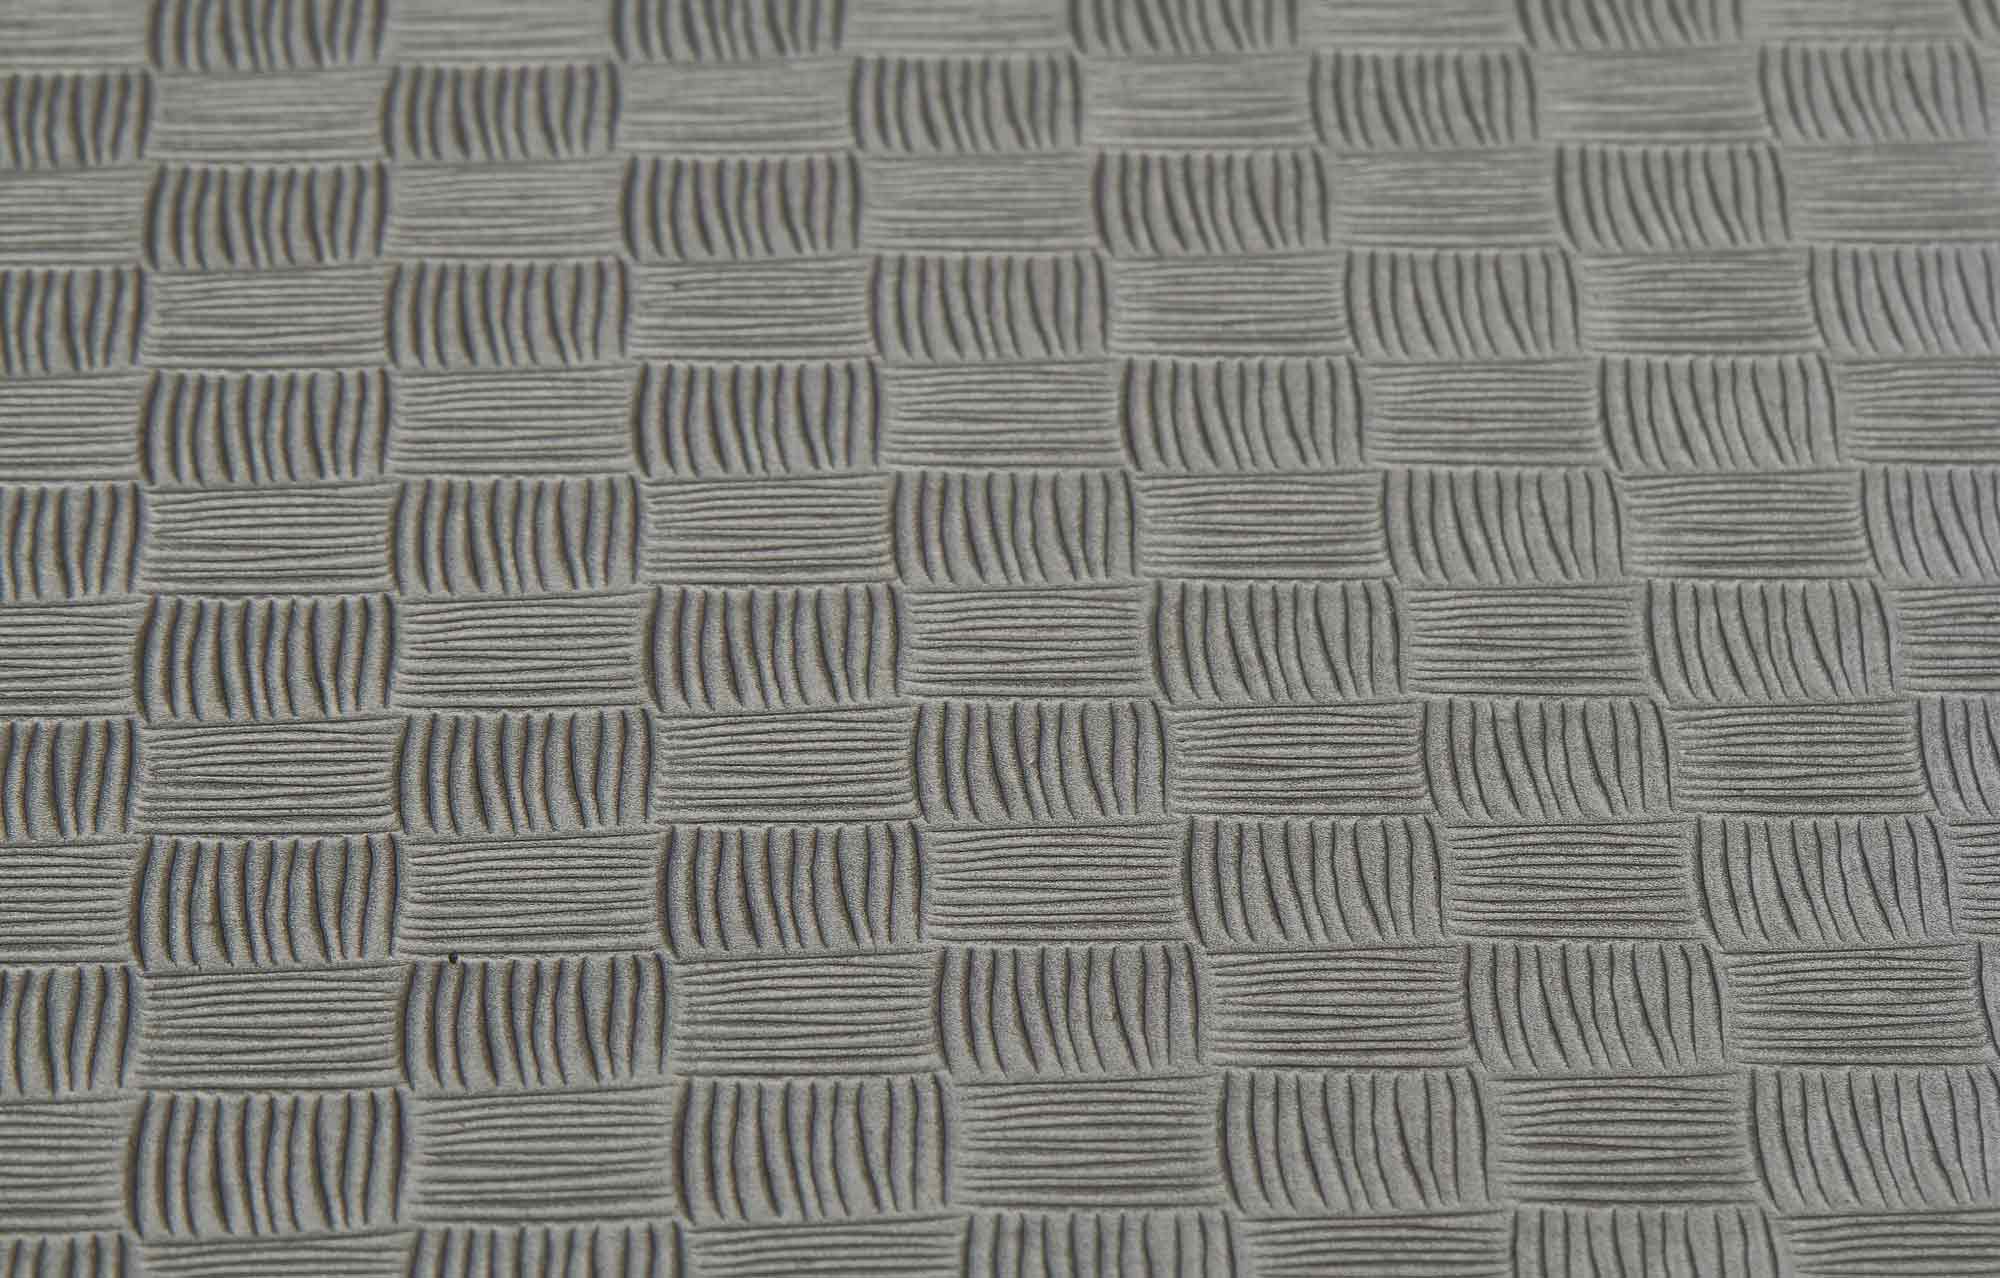 Kampfsportmatten Wendematte VERZAHNT Checker / 100 x 100 x 2cm / schwarz-grau